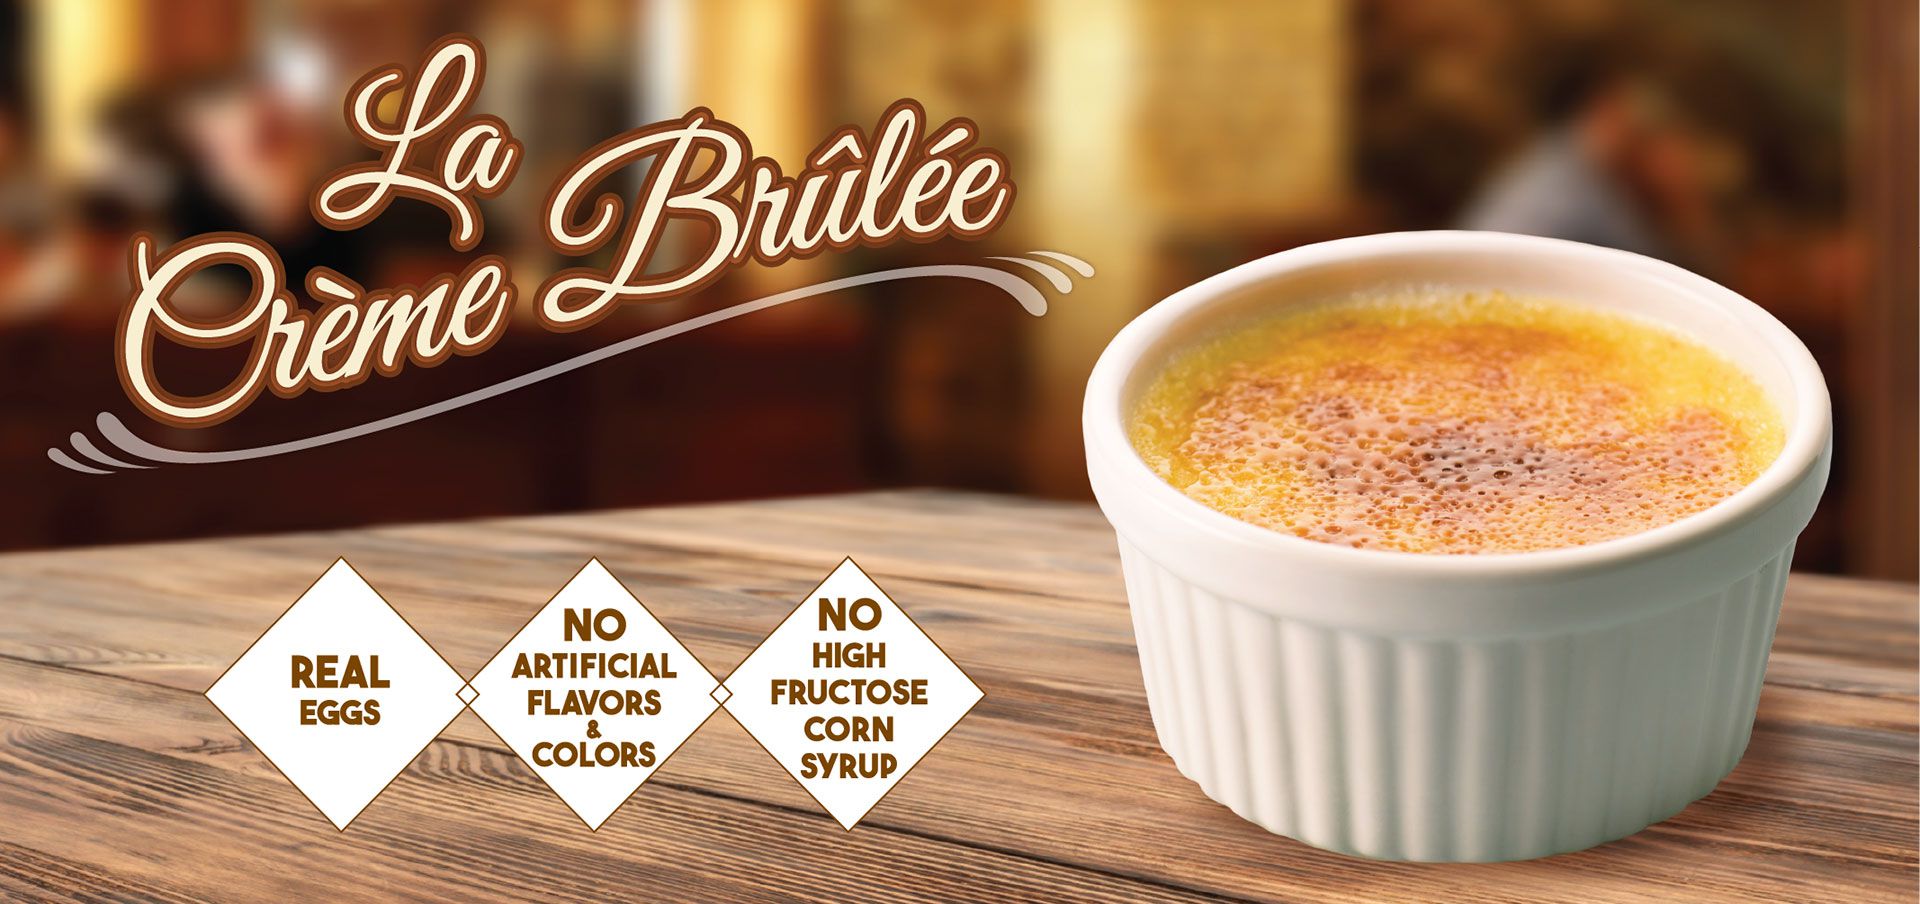 la crème brulee label image